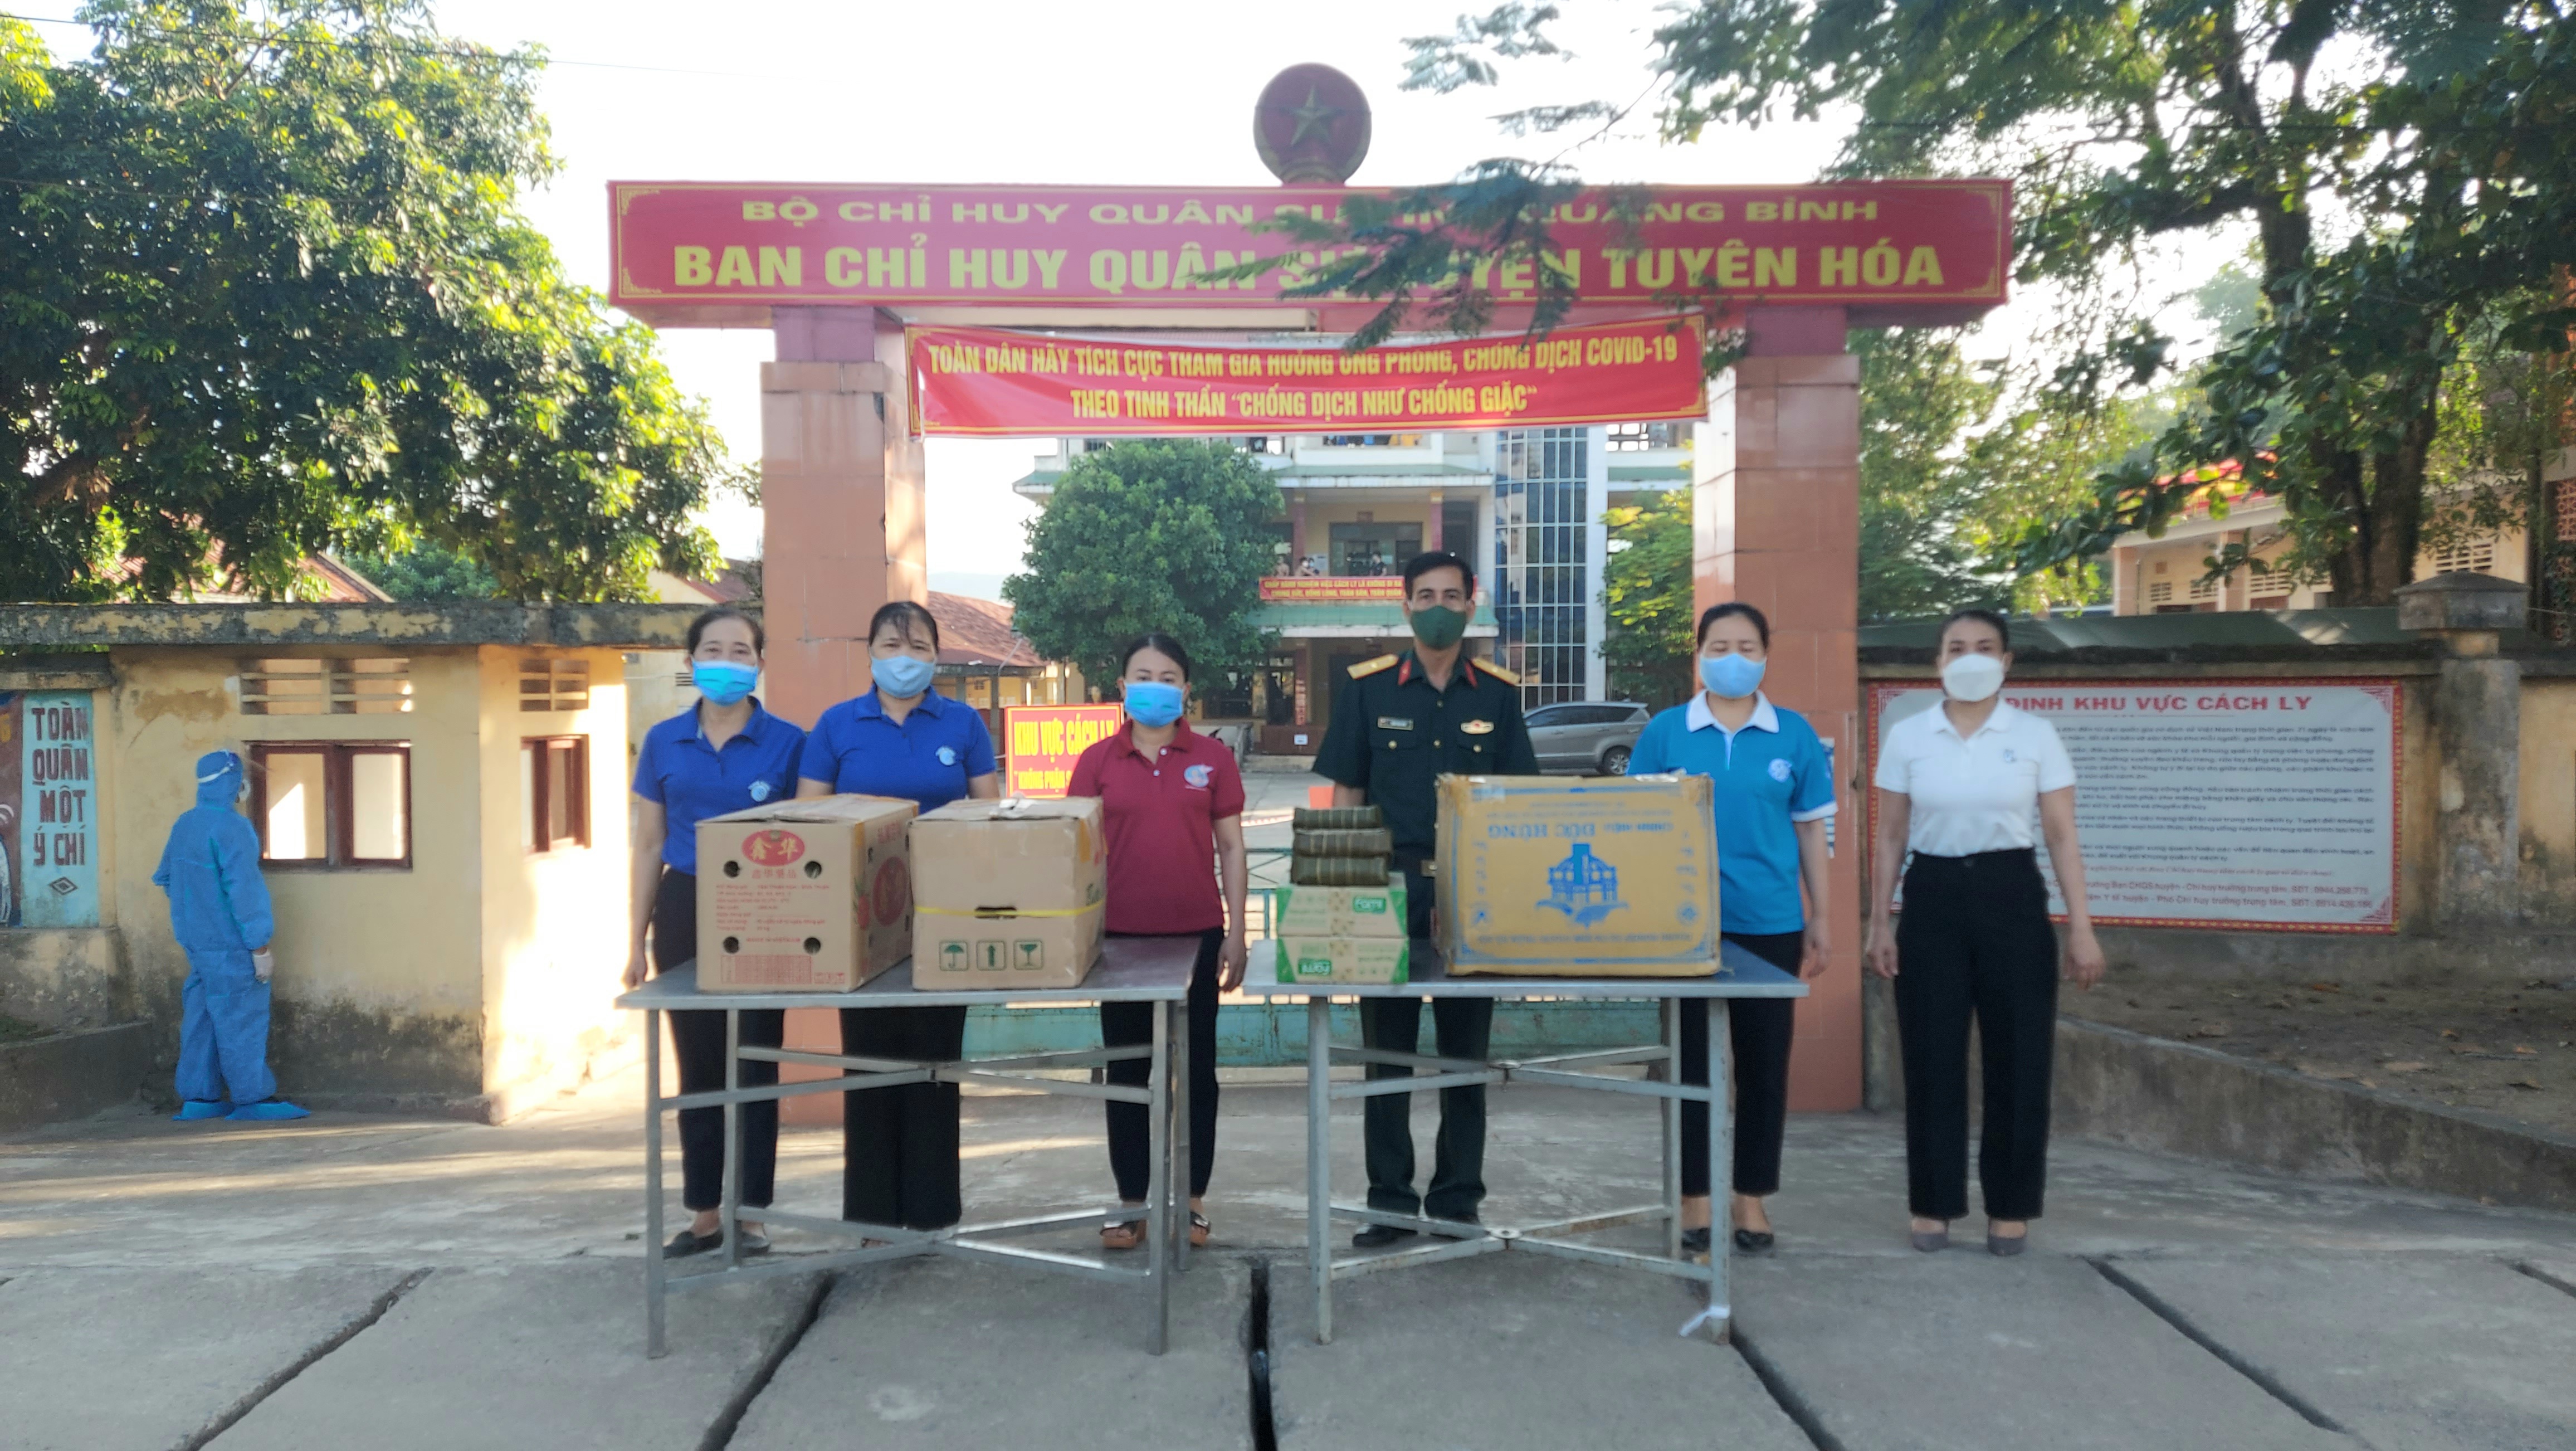 CLB Thể dục nhiệp điệu thôn Uyên Phong, xã Châu Hóa trao 233 cái bánh chưng, bánh chày cho khu cách ly tập trung huyện Tuyên Hóa